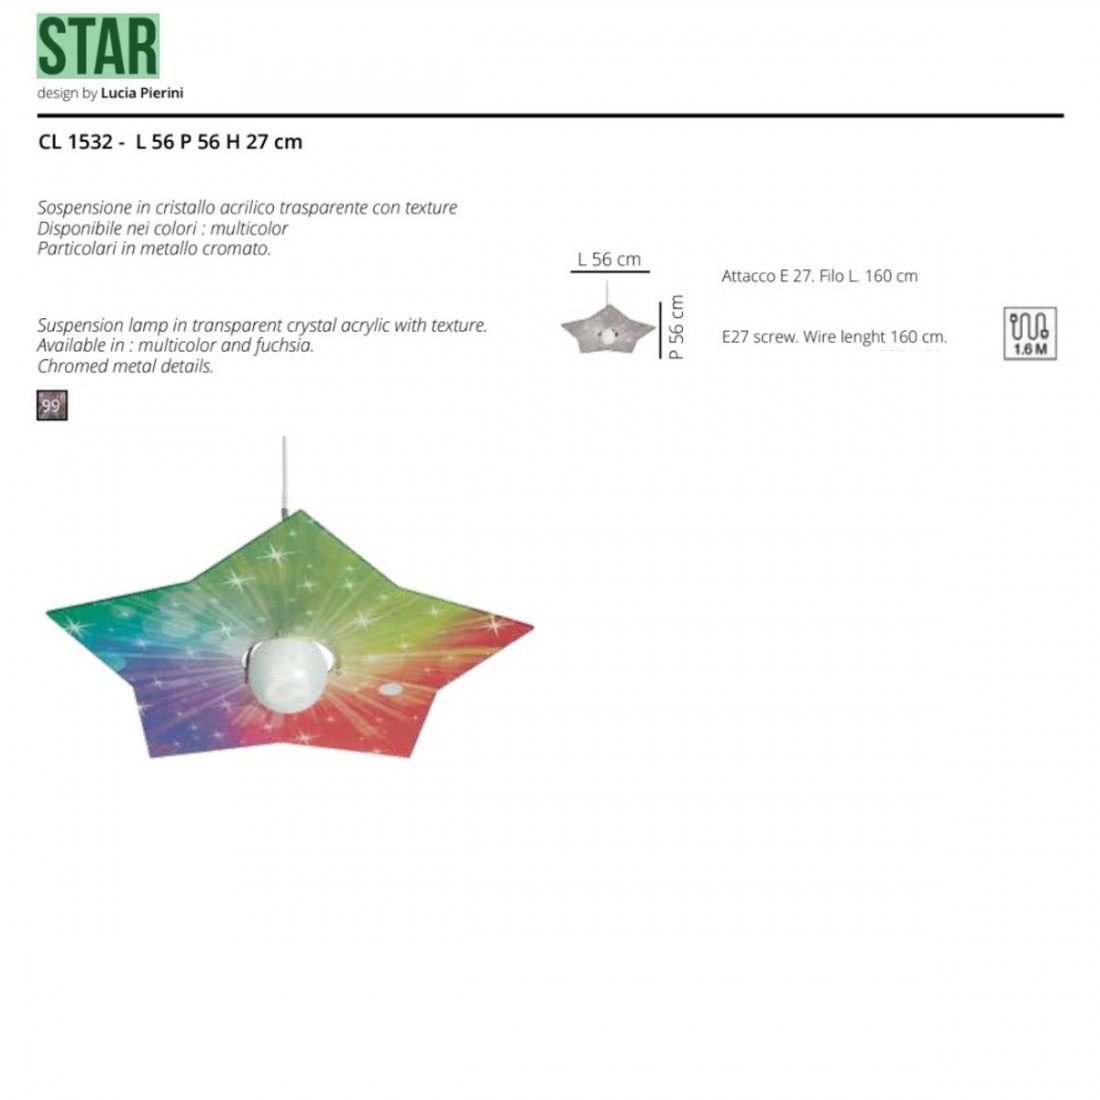 Sospensione STAR CL1532 99 EMPORIUM